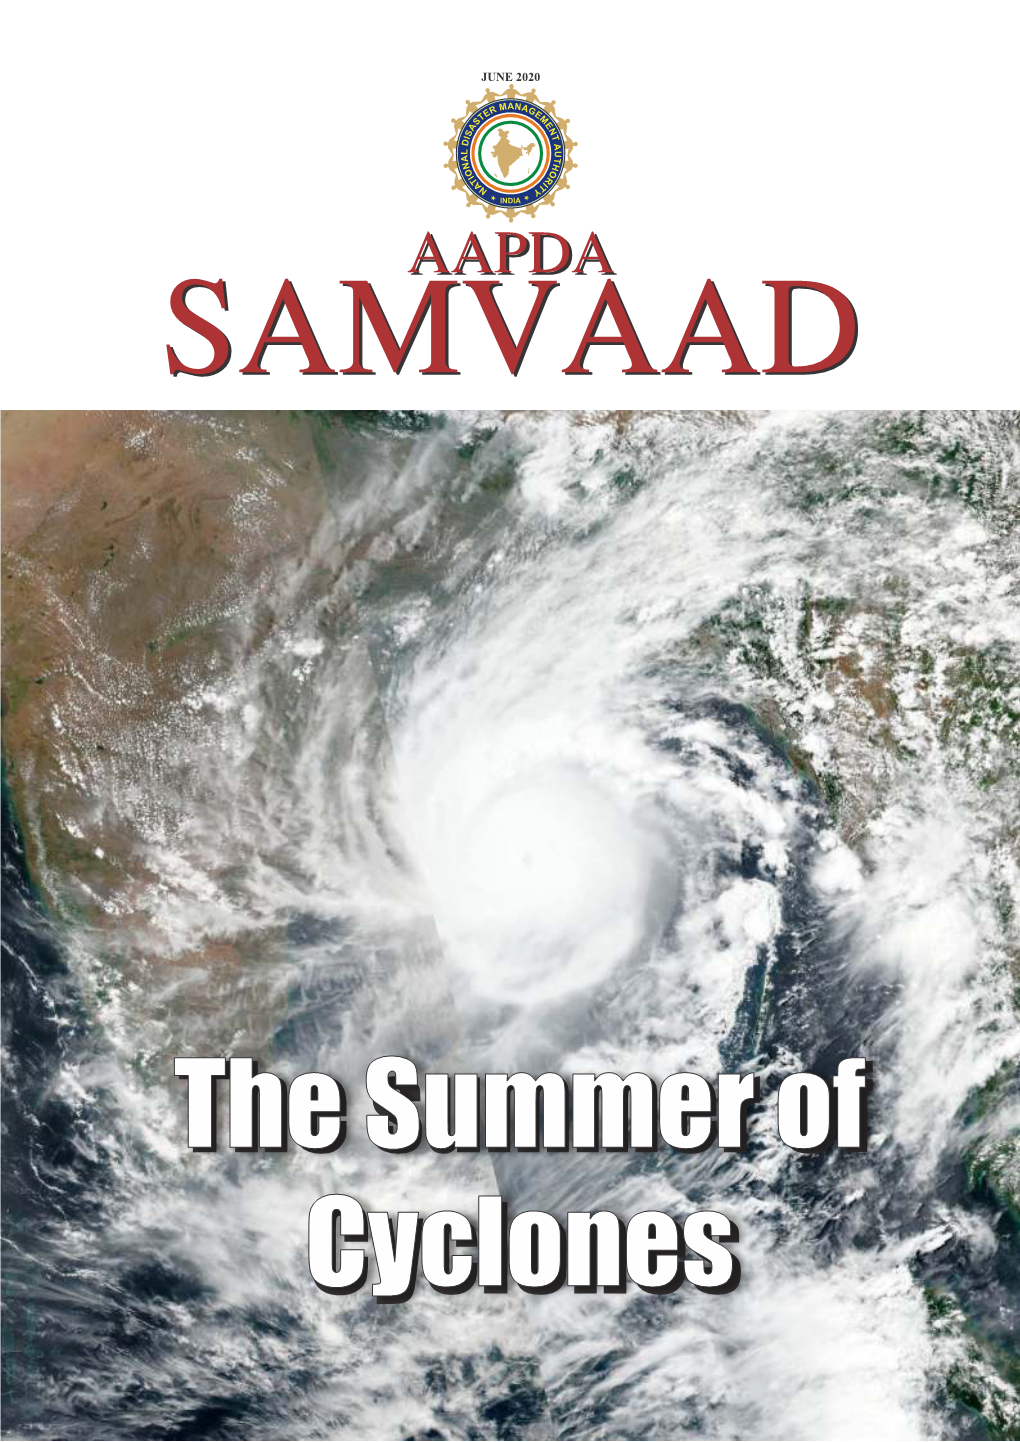 Aapda Samvaad Issue June 2020.Cdr